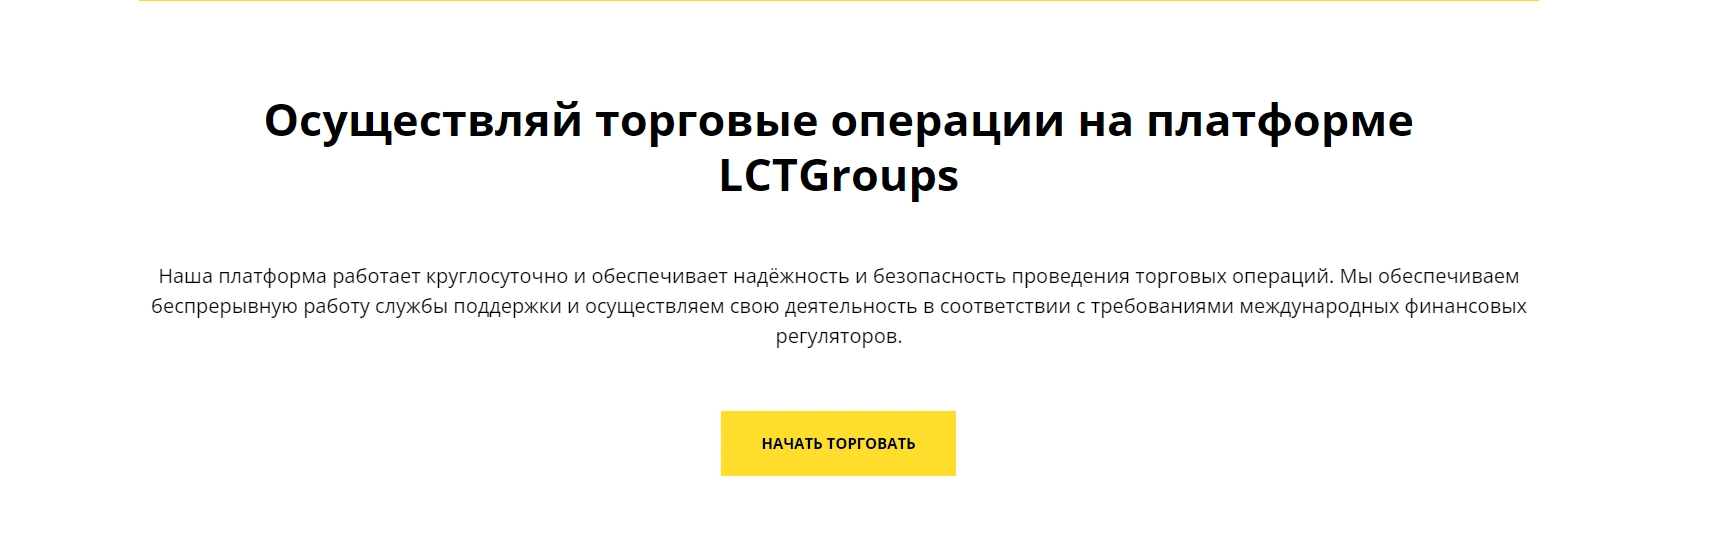 LCTGroups обман